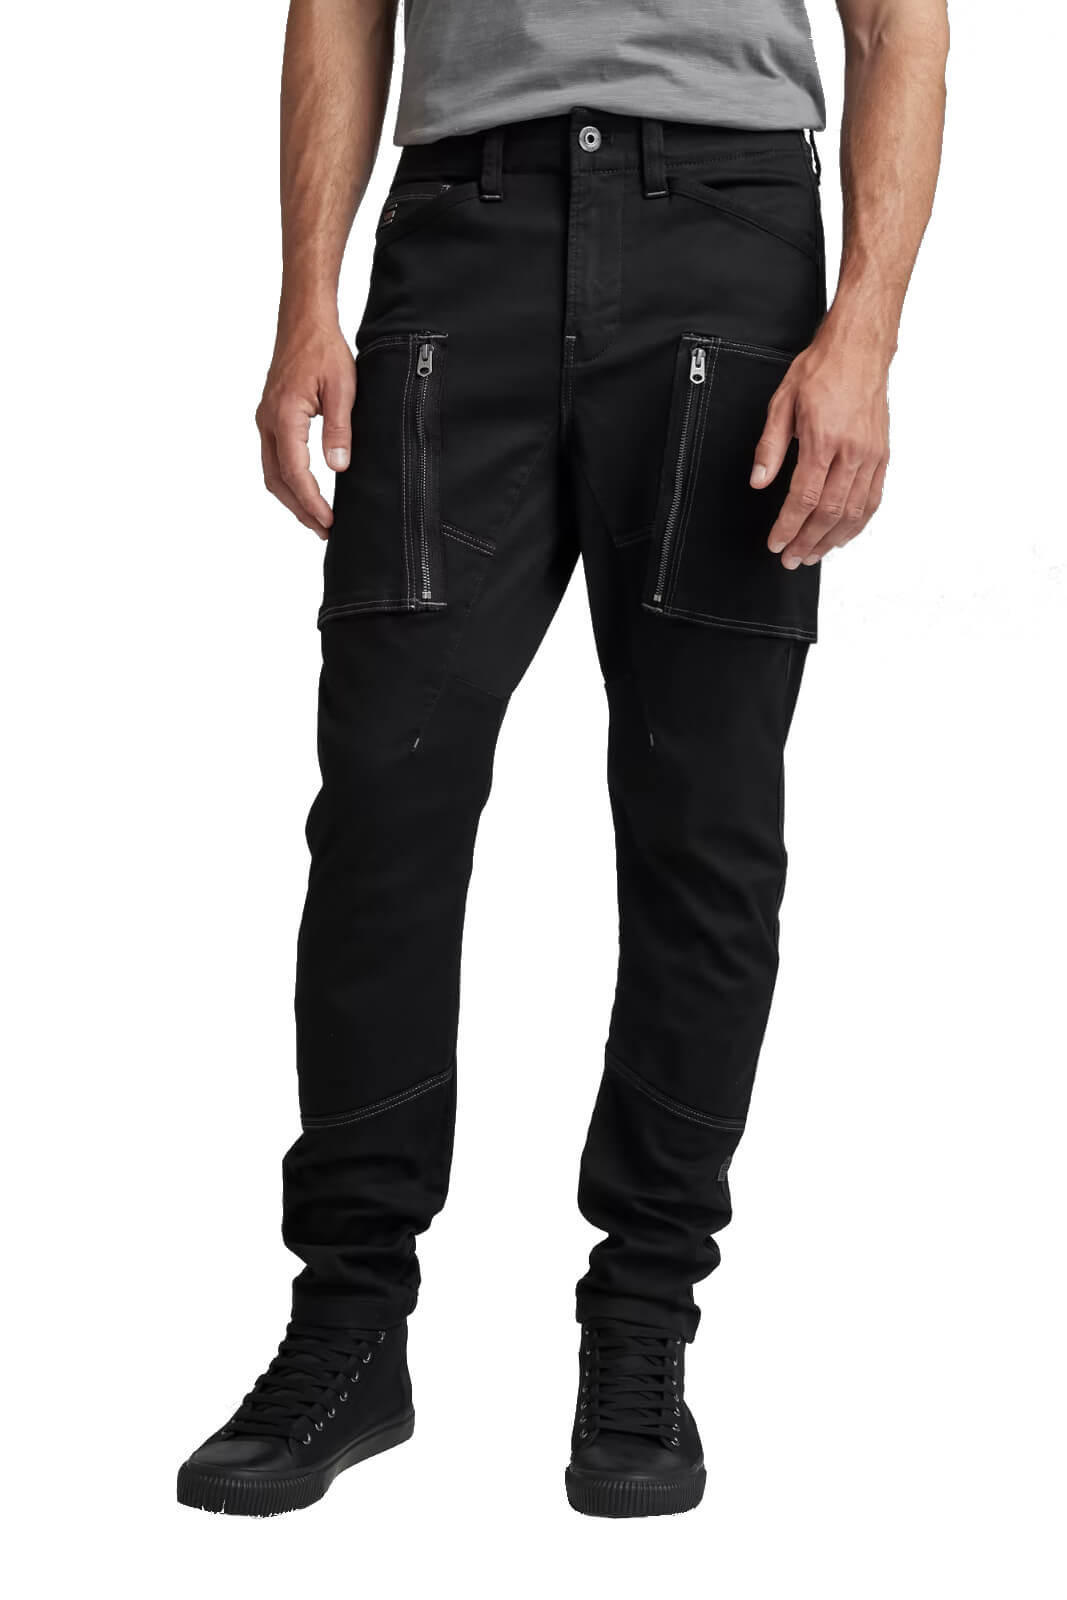 G-Star RAW jeans uomo ZIP POCKET 3D SKINNY CARGO